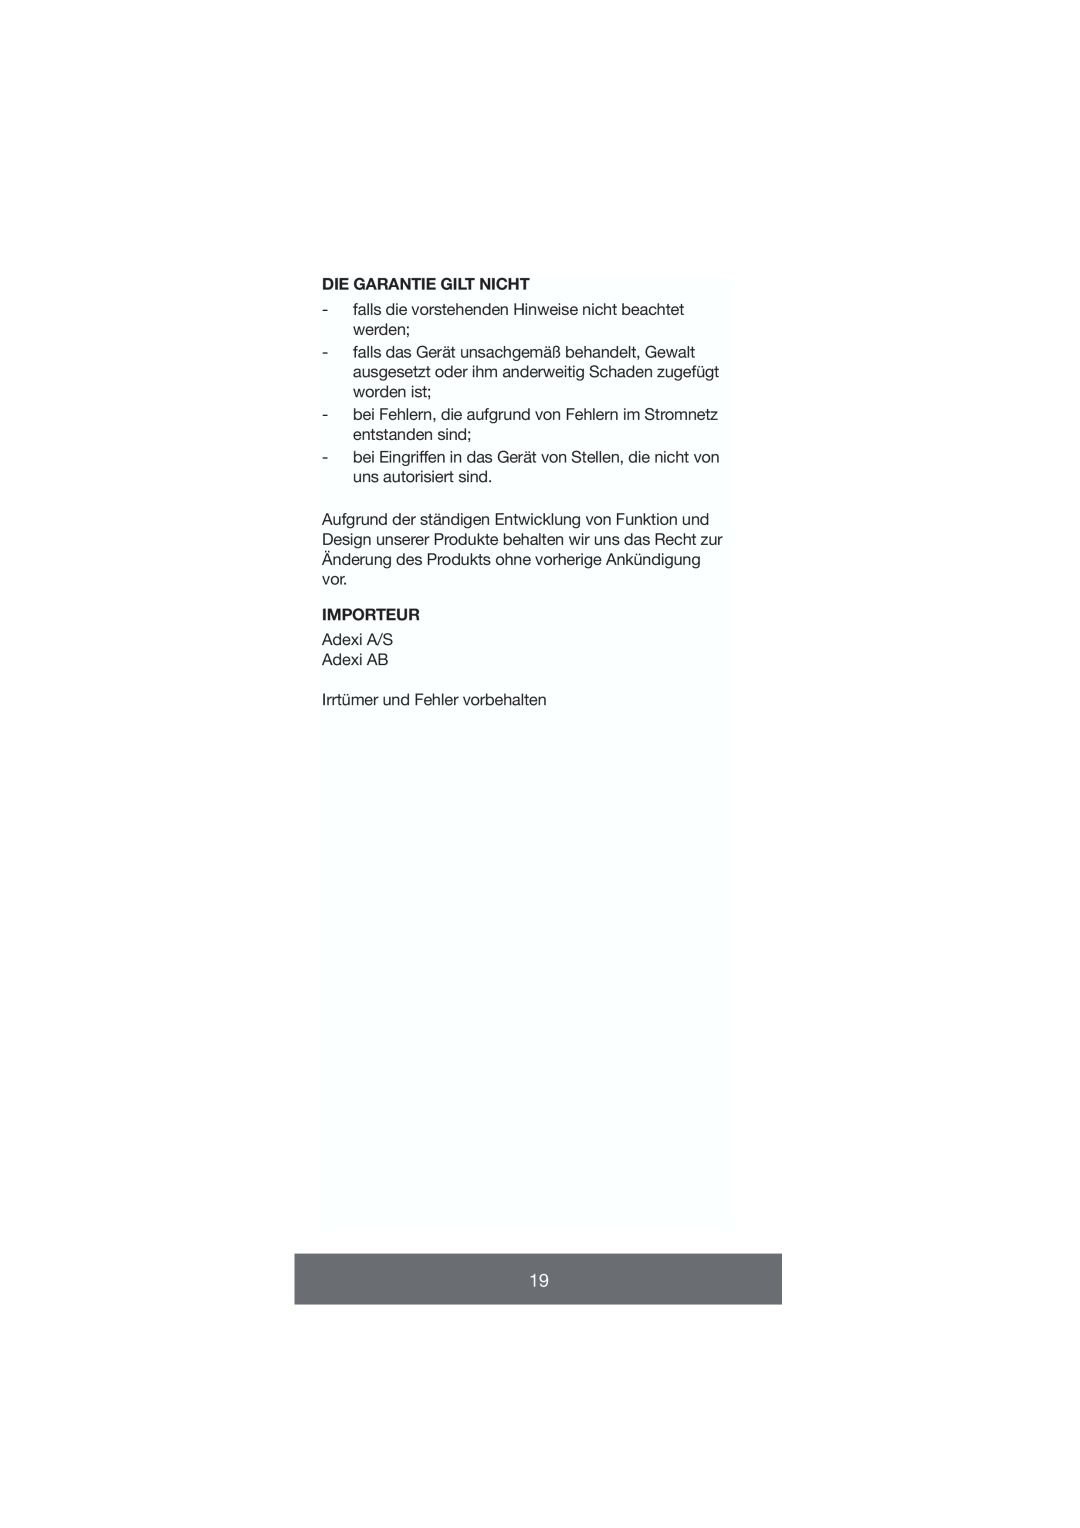 Melissa 646-035 manual Die Garantie Gilt Nicht, Importeur 